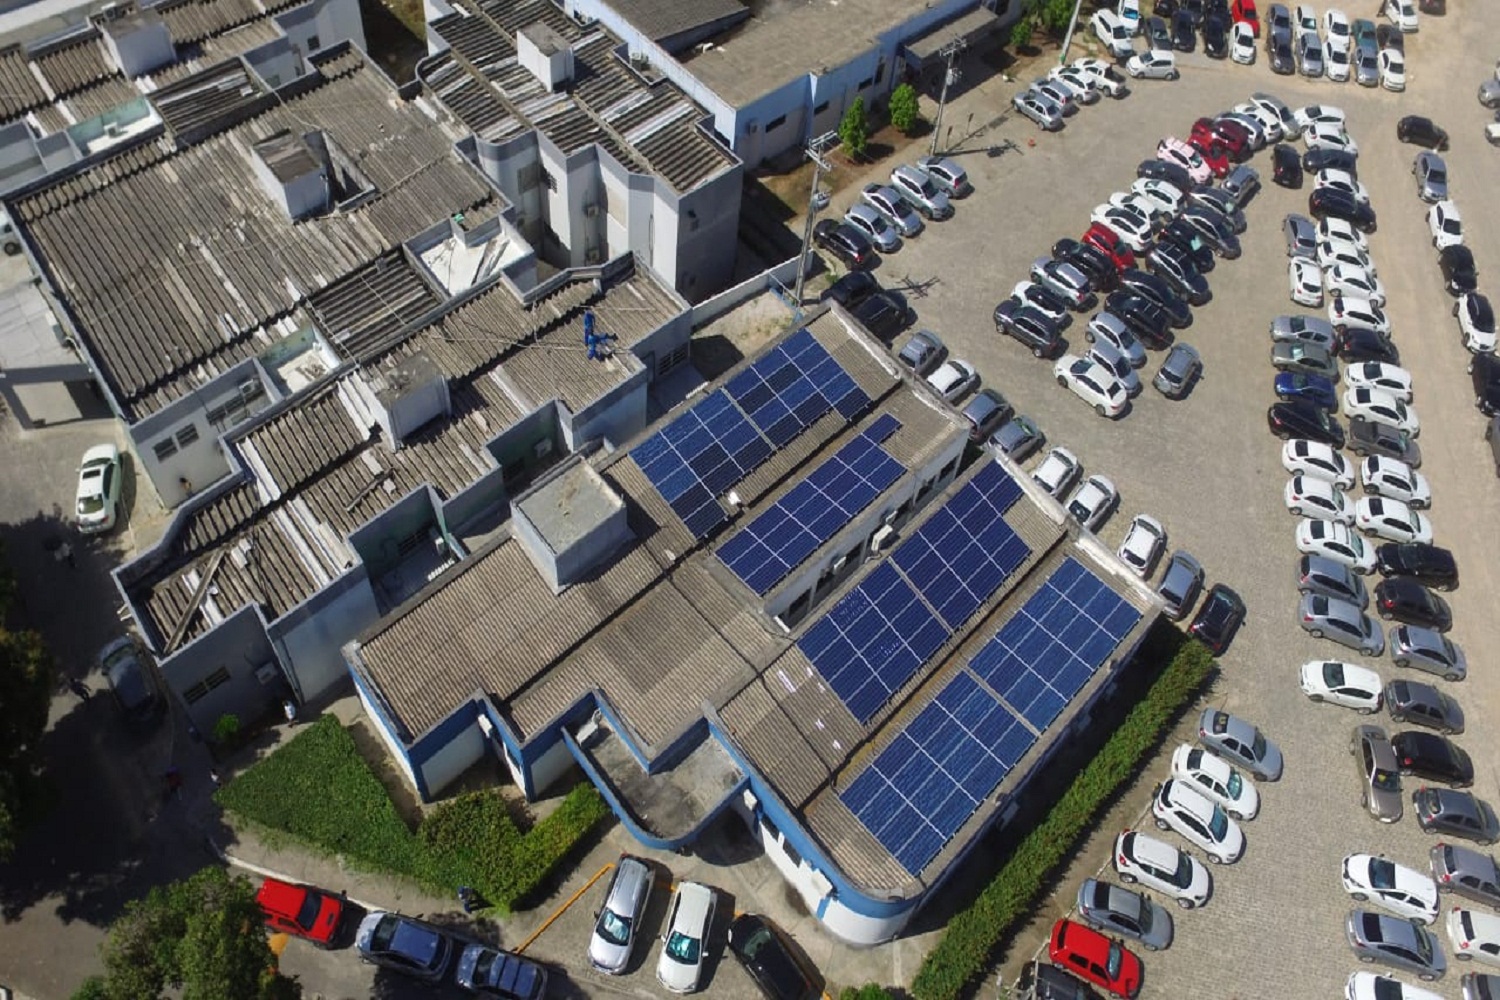 Sistema está constituído de 100 placas fotovoltaicas de 330Wp cada uma e dois inversores de 15kW. (foto: divulgação SFCR)